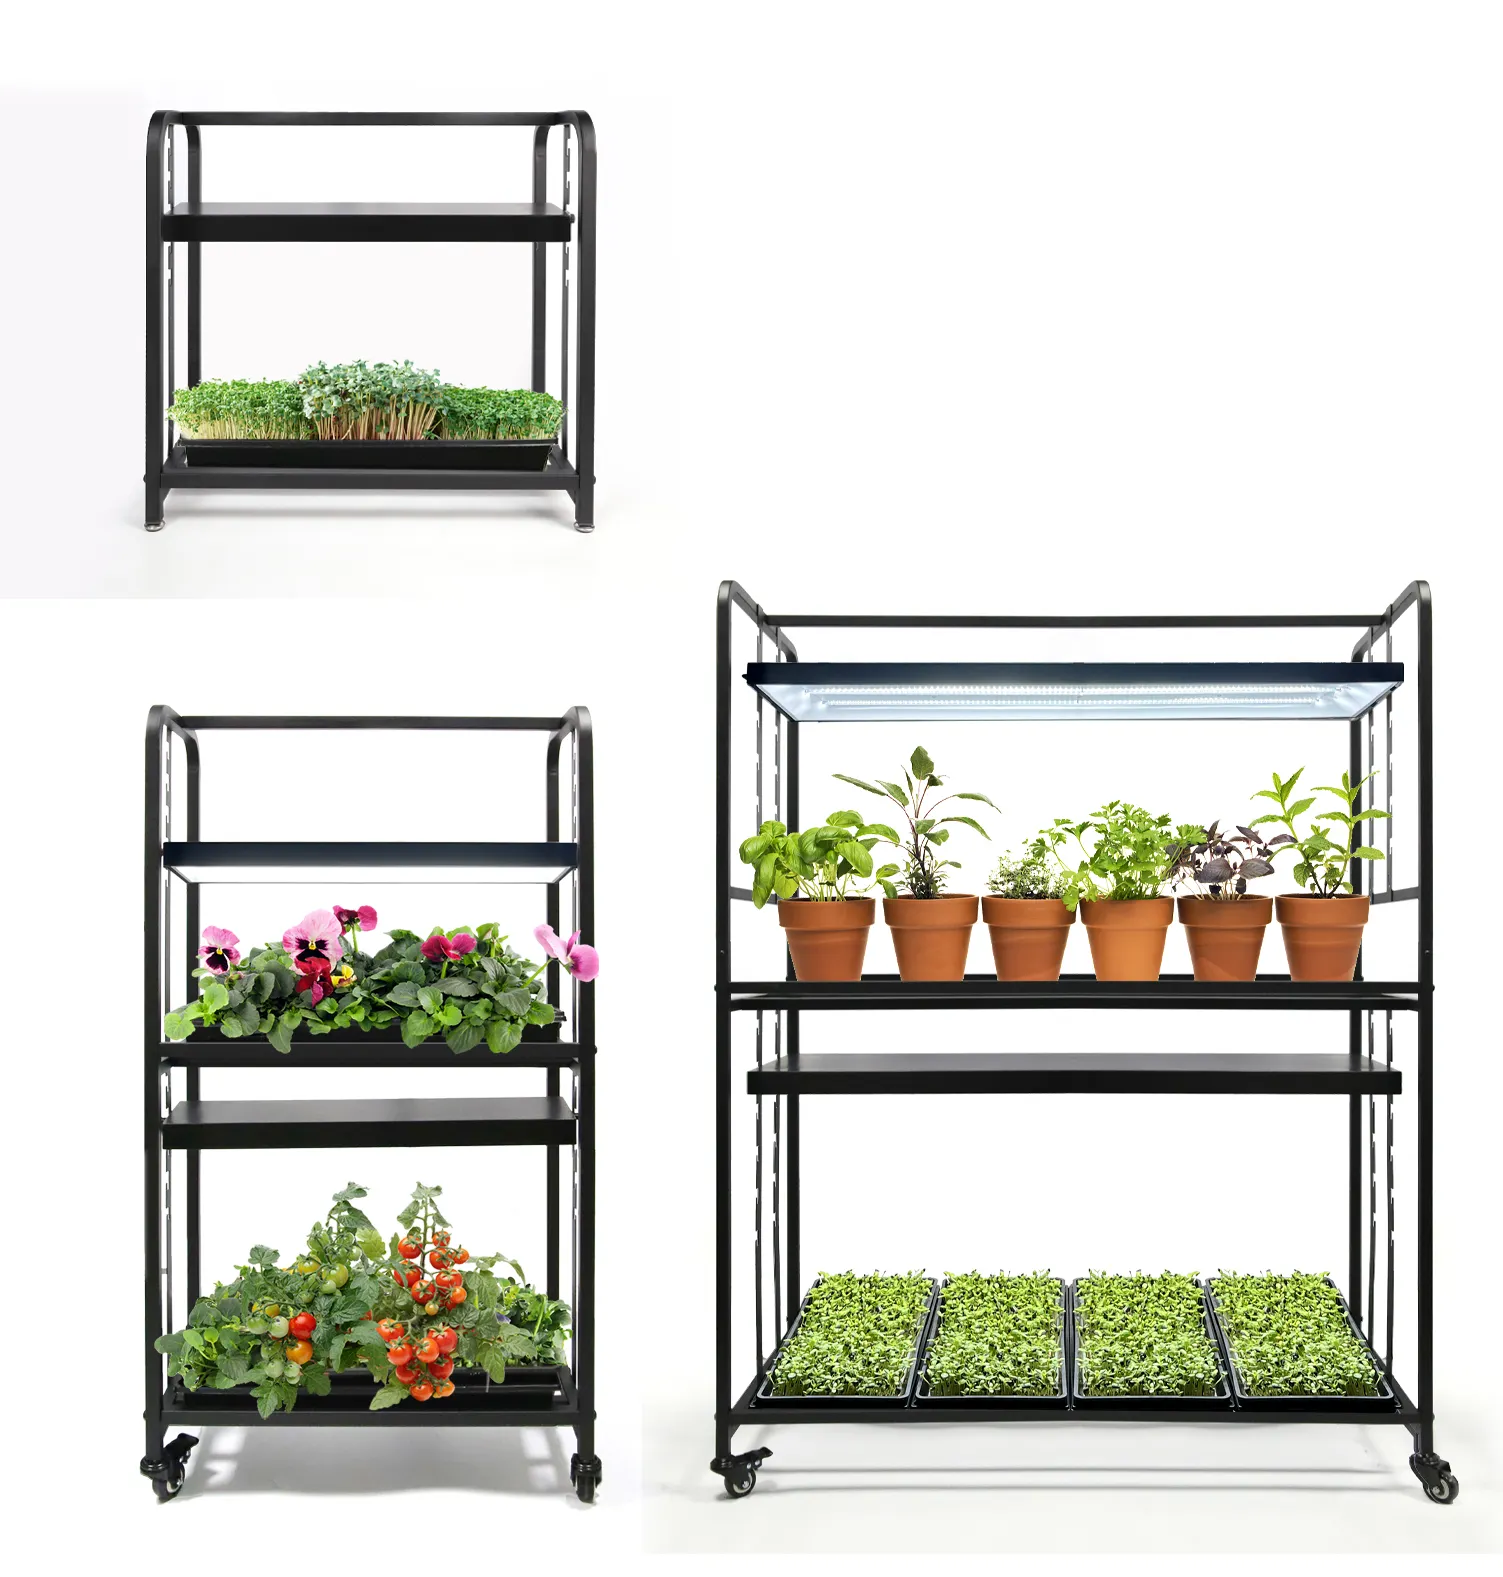 3 дополнительных садовых подставки для комнатных растений, кухонная полка со светодиодным светом полного спектра для запуска семян, суккулентов, трав